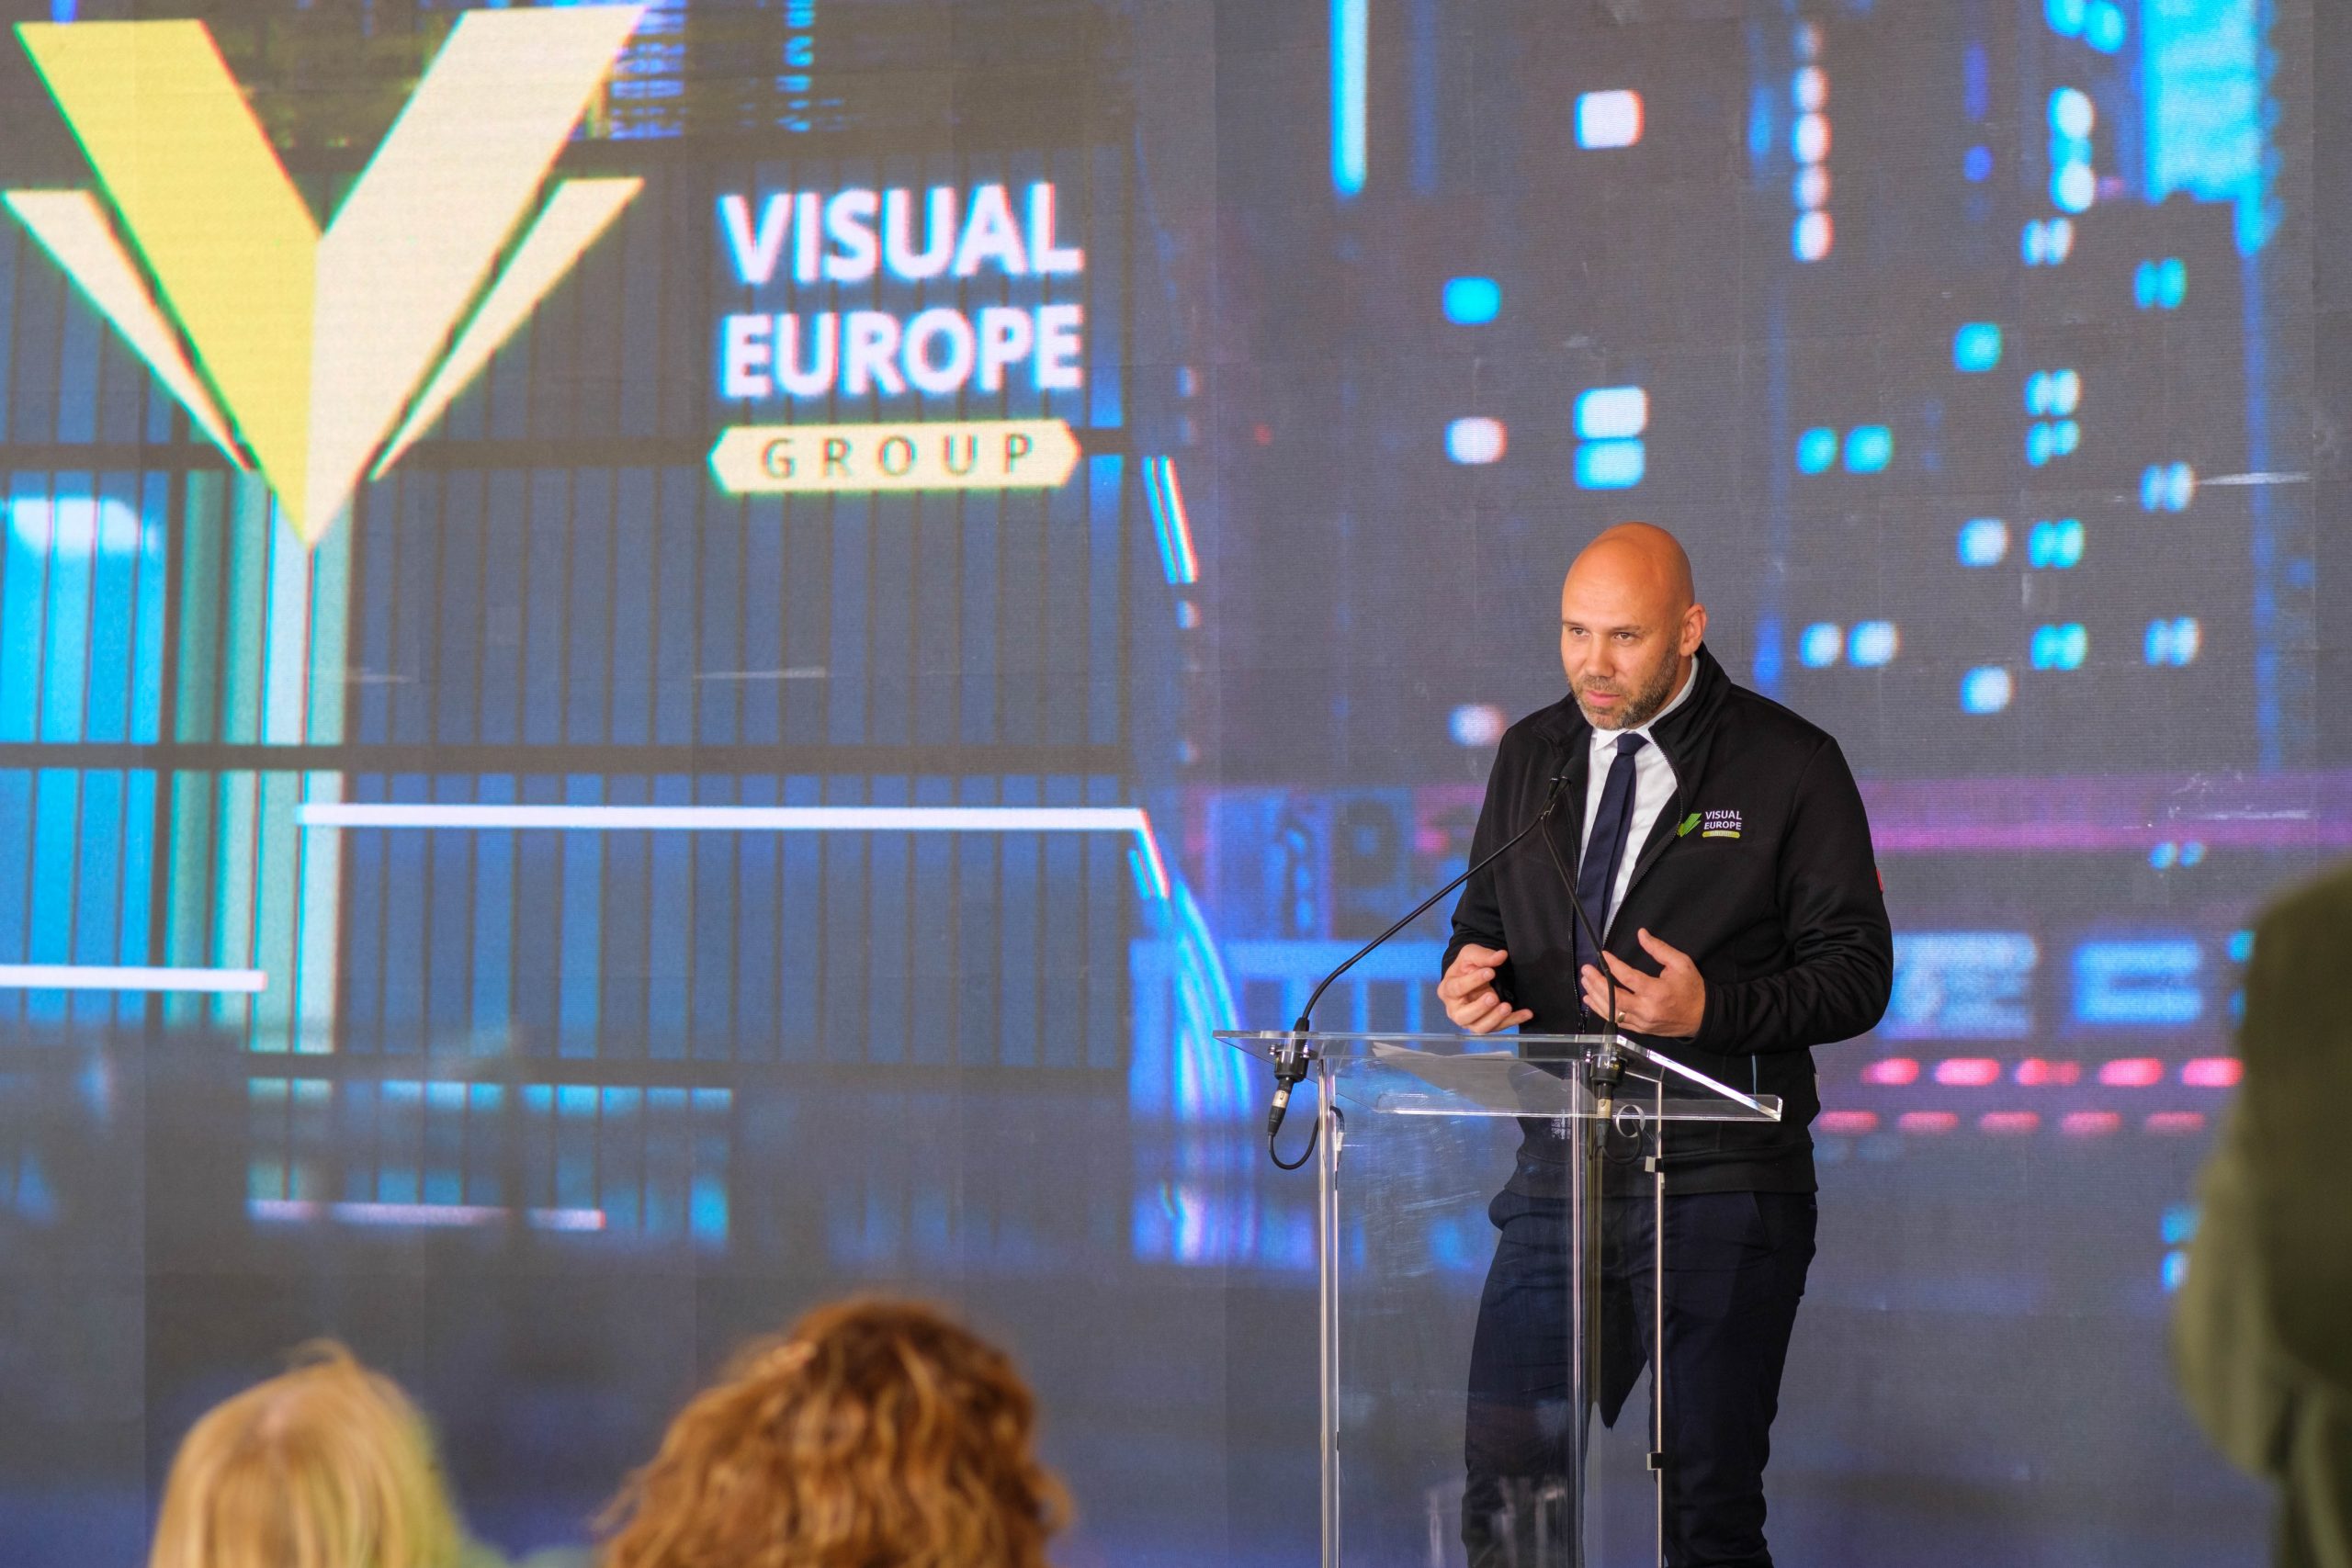 Elkezdődött Kelet-Közép-Európa legnagyobb virtuális filmstúdiójának építése